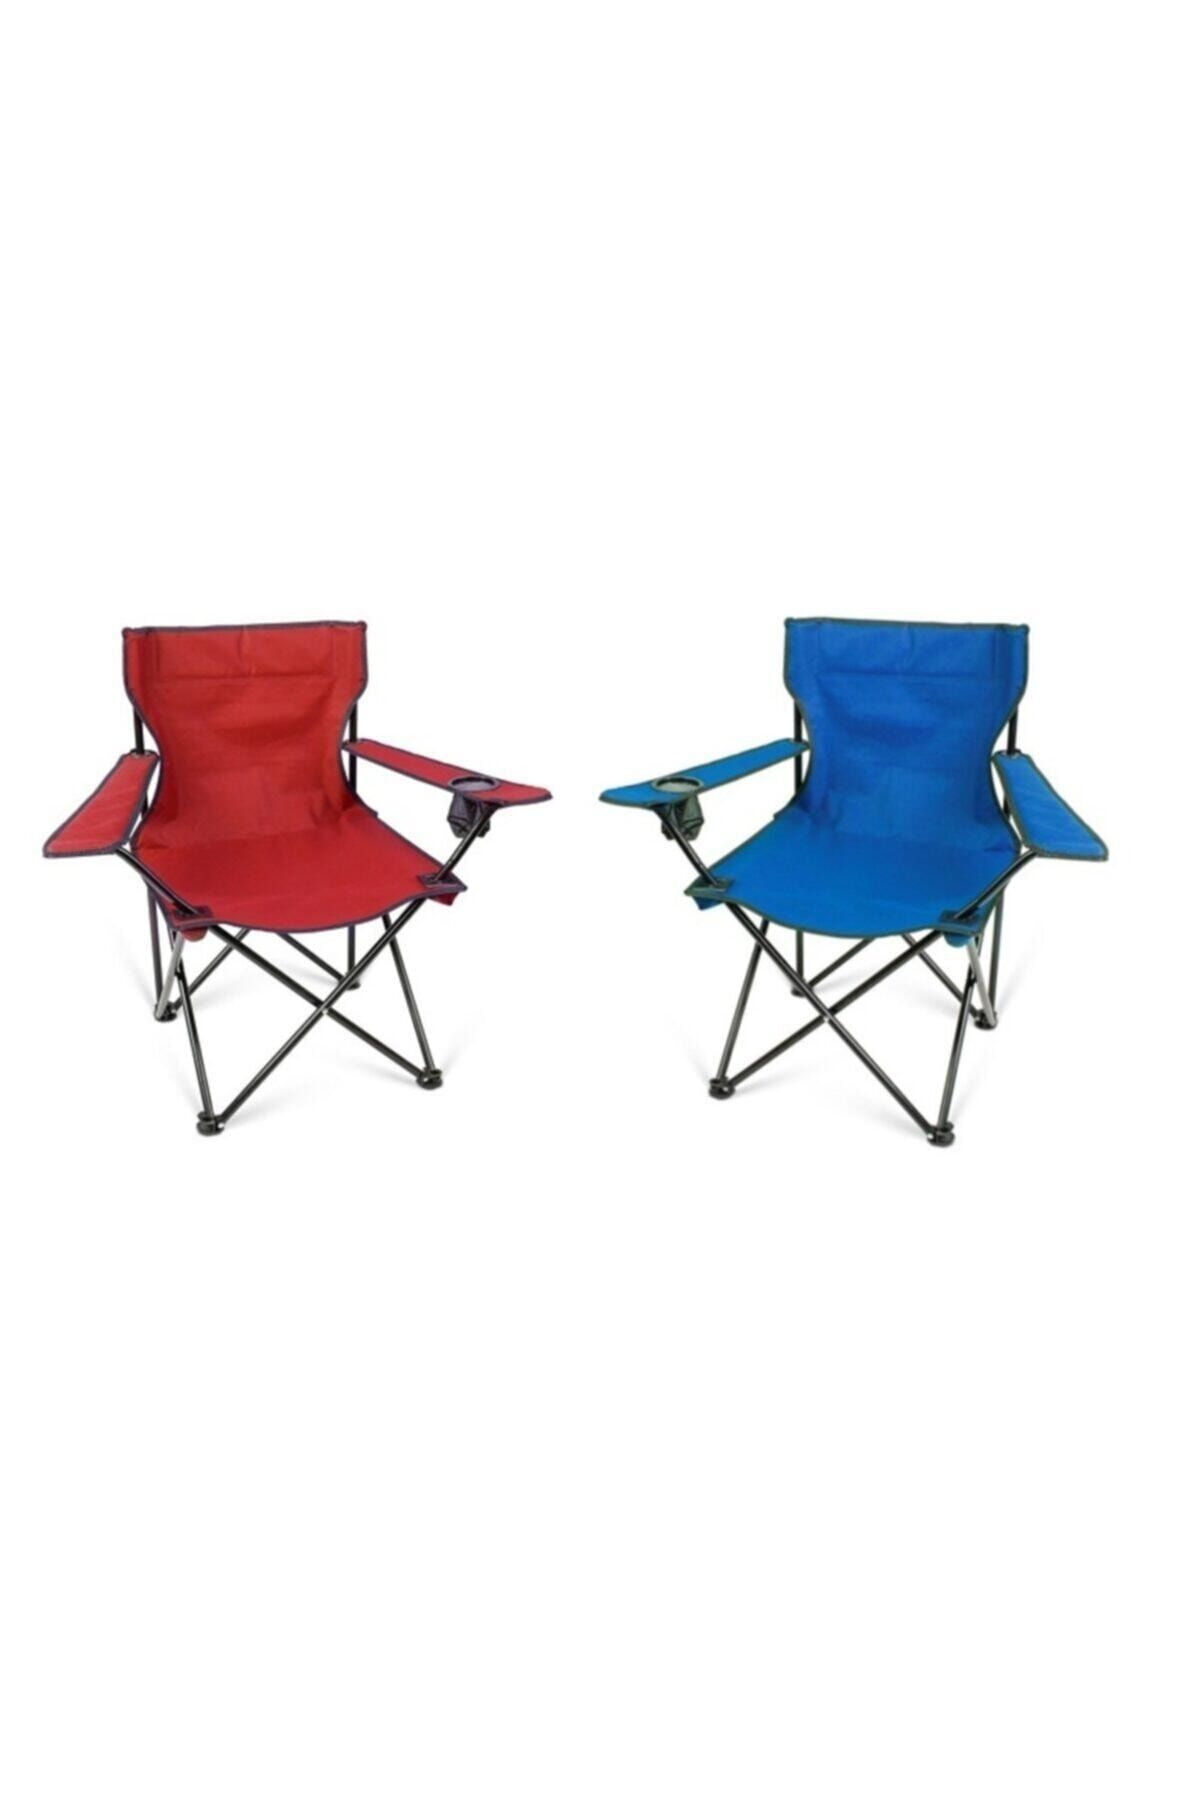 Toysan Katlanır Çantalı Kamp Sandalyesi Kırmızı Ve Mavi